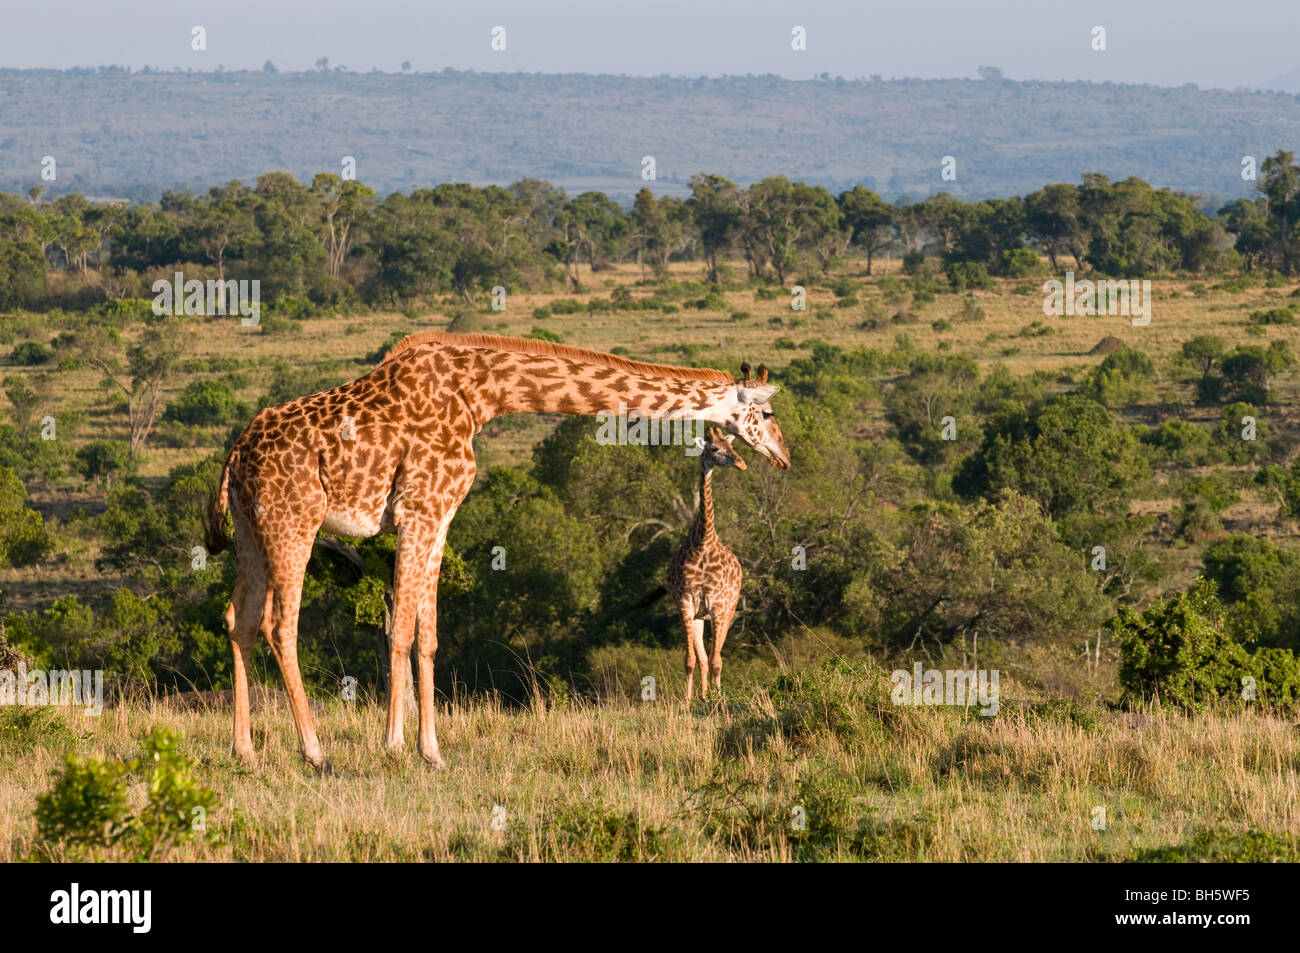 Masai Giraffe (Giraffa camelopardalis), Masai Mara National Reserve, Kenya. Stock Photo